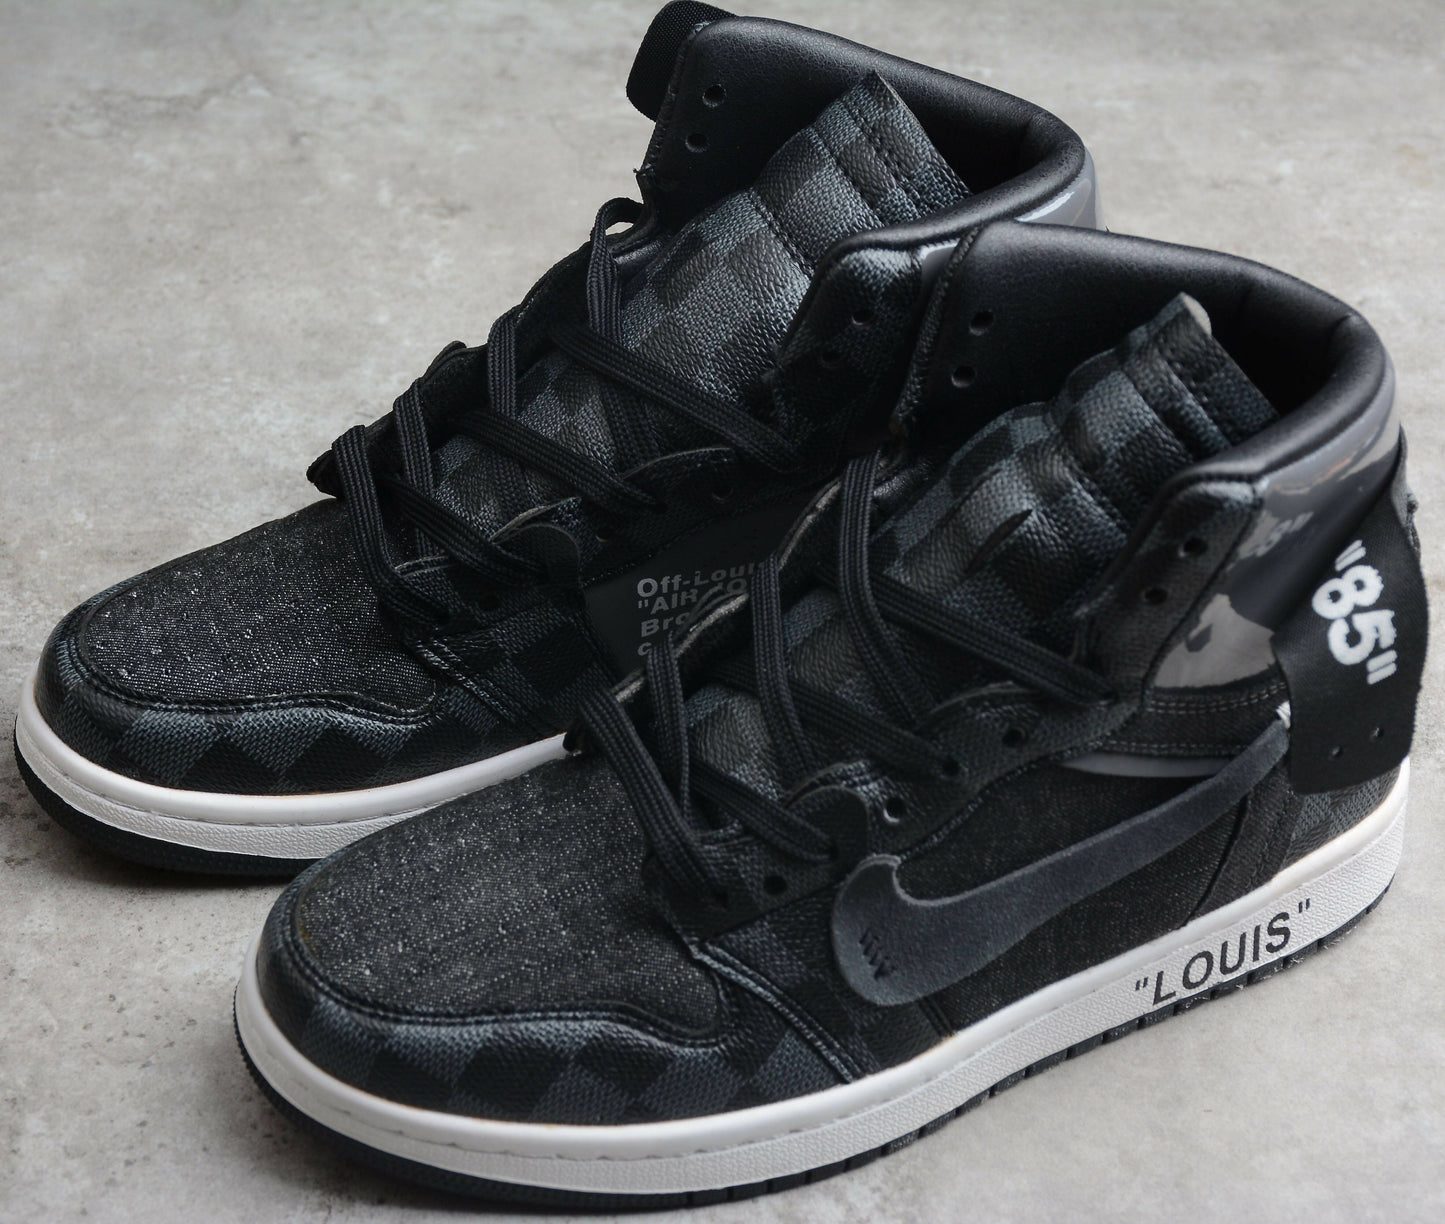 "Black Off-Louis LV" Nike Air Jordan 1 High